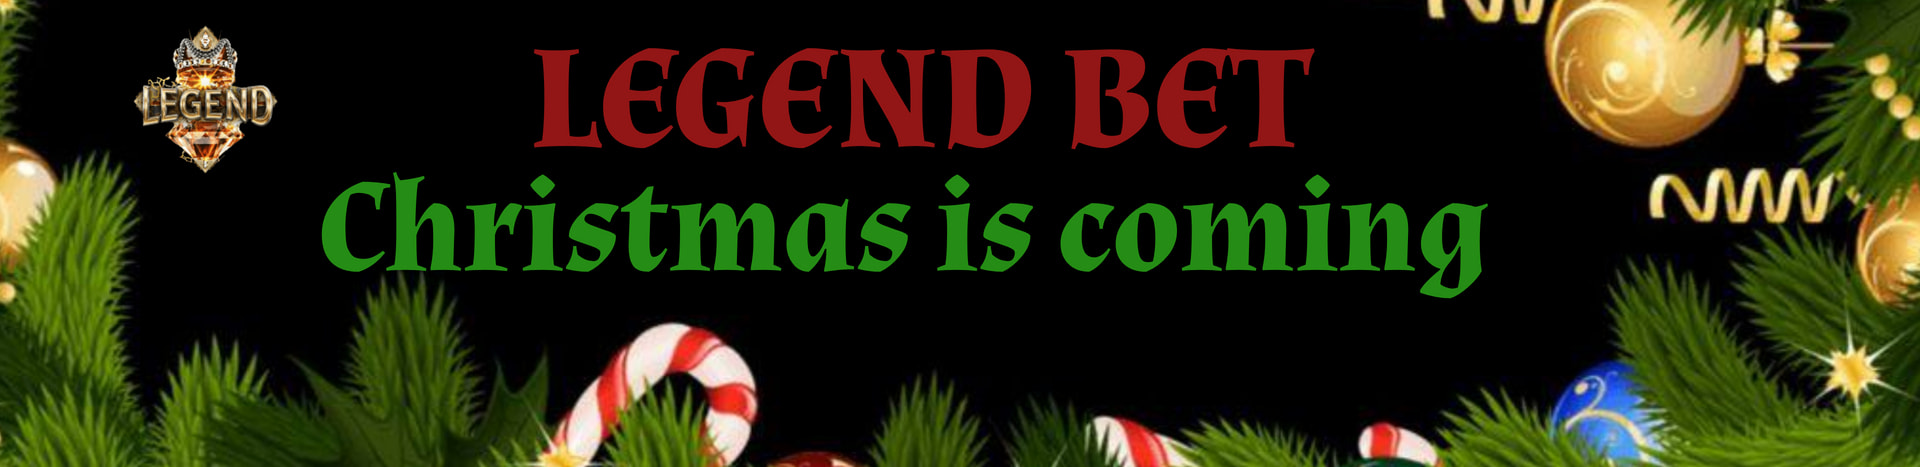 Christmas_banner